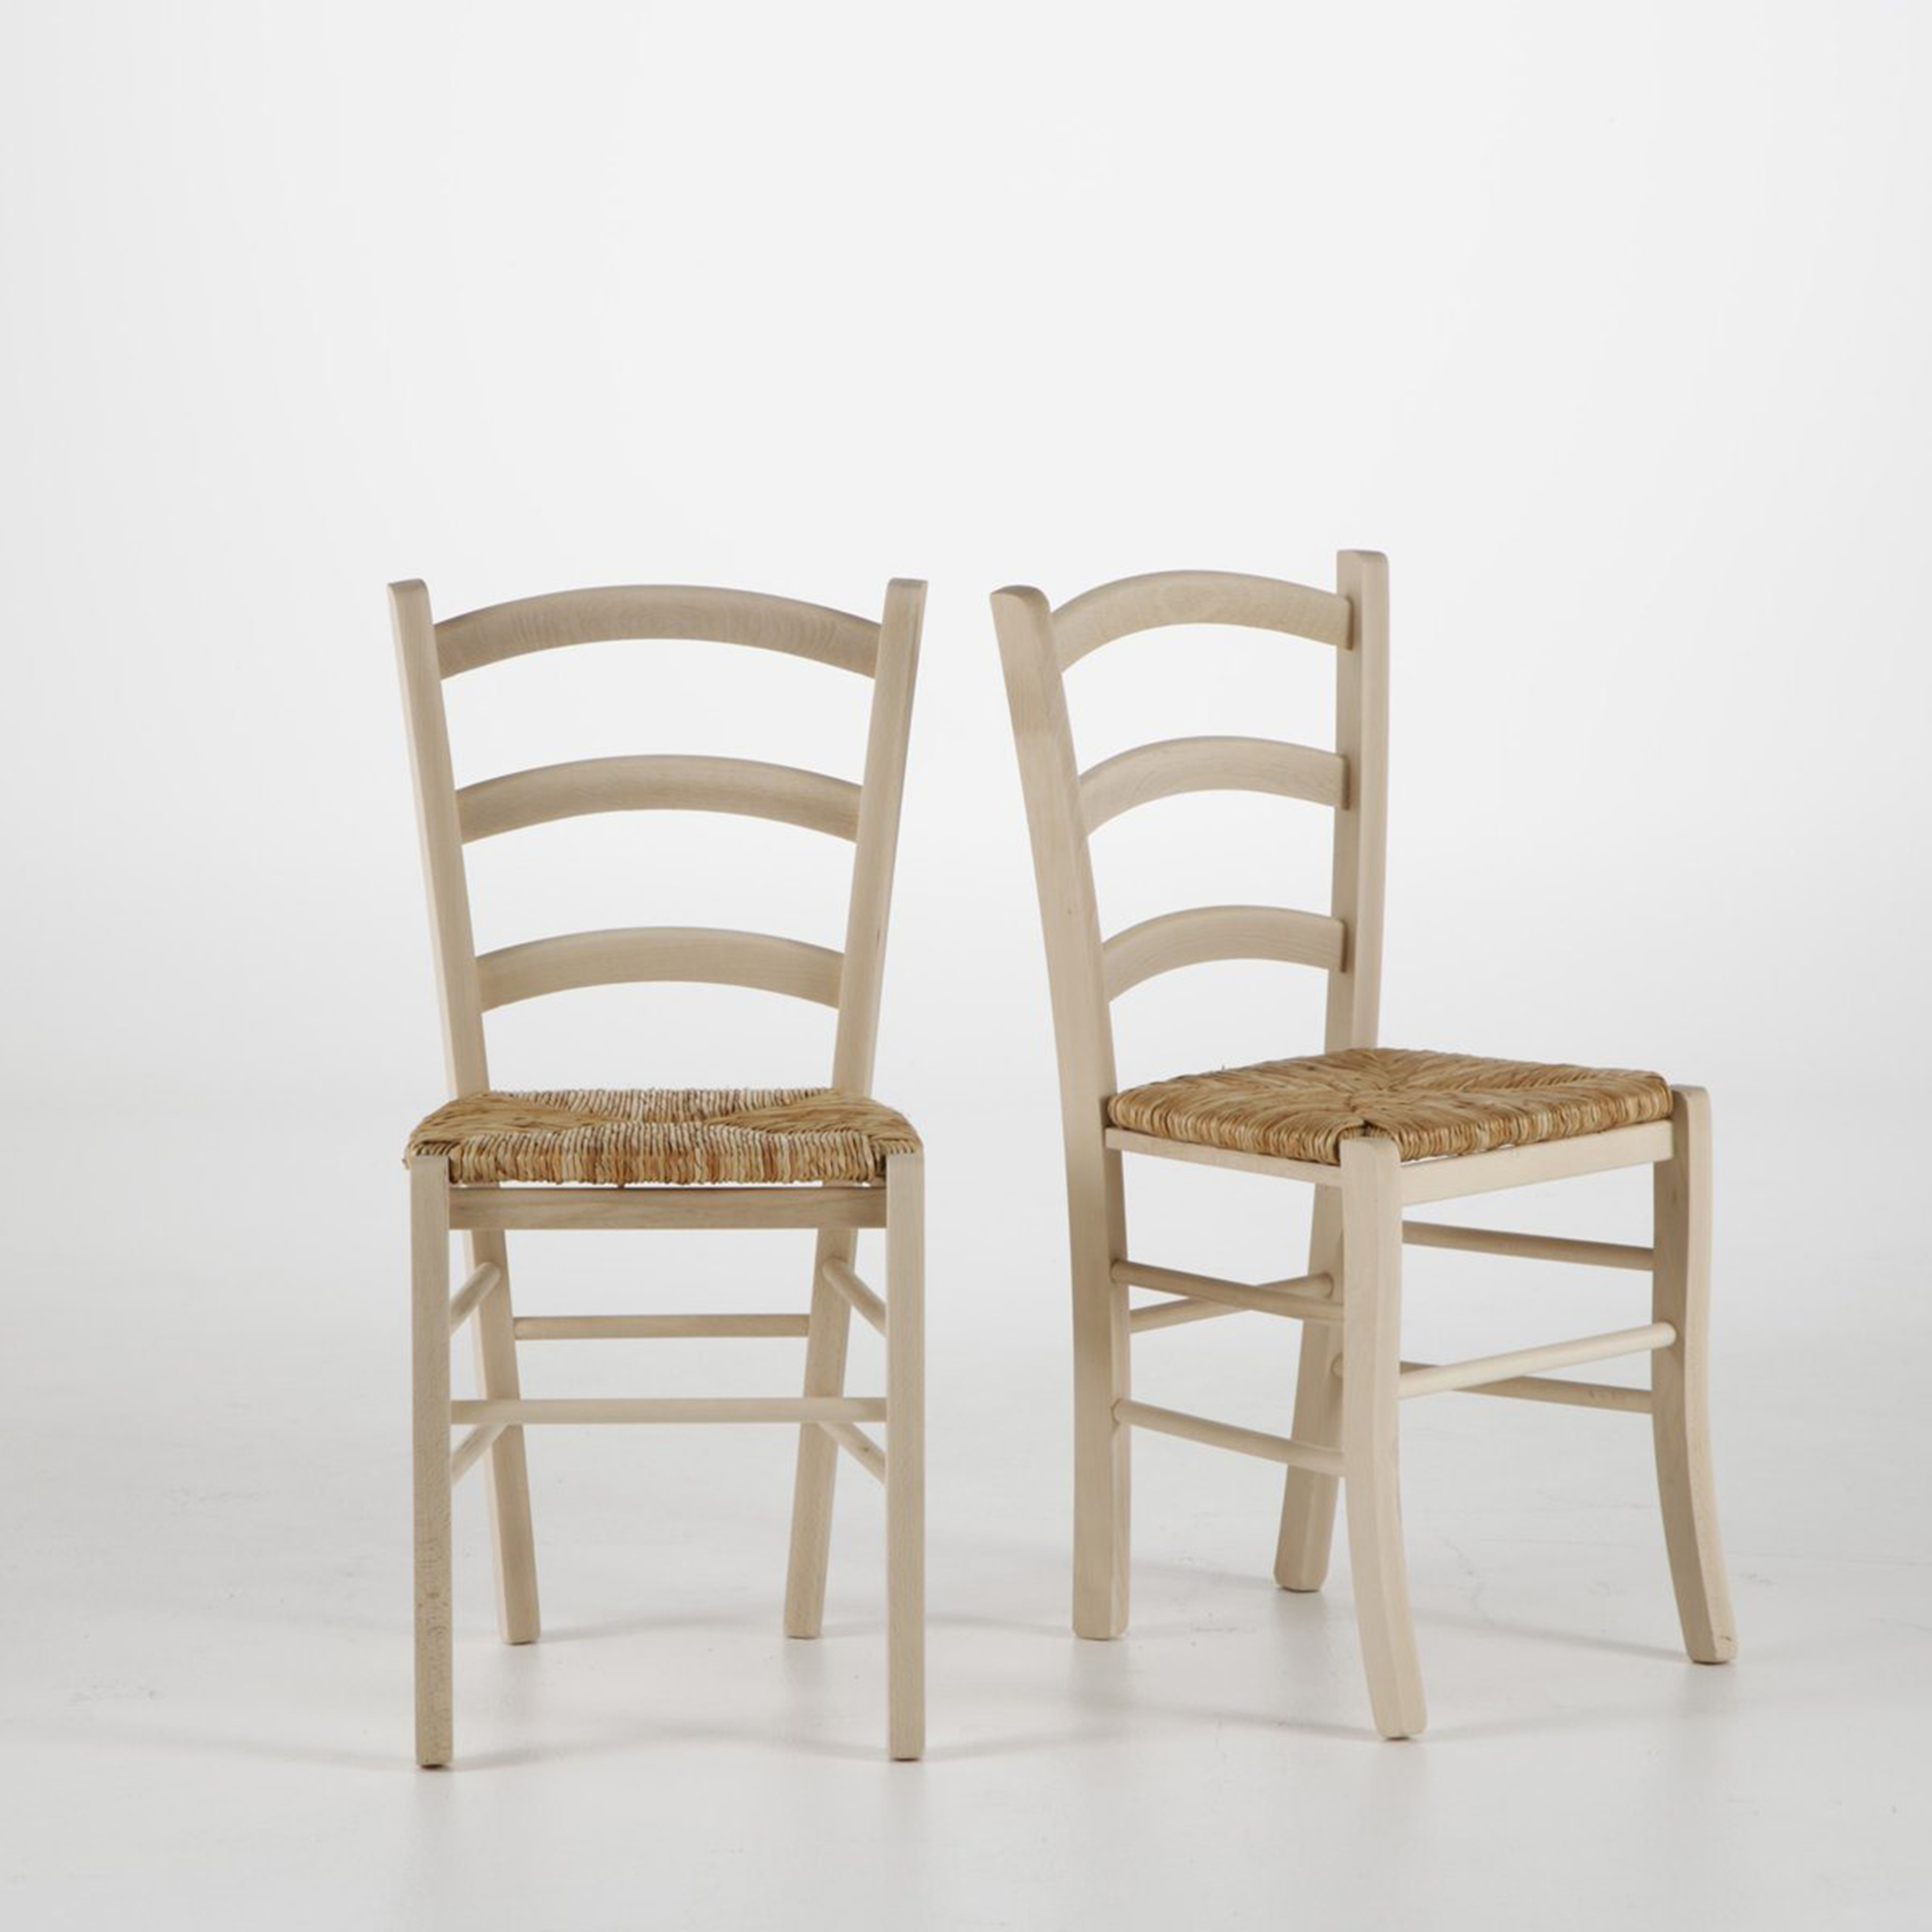 Комплект из 2 стульев с плетеным сидением, Perrine